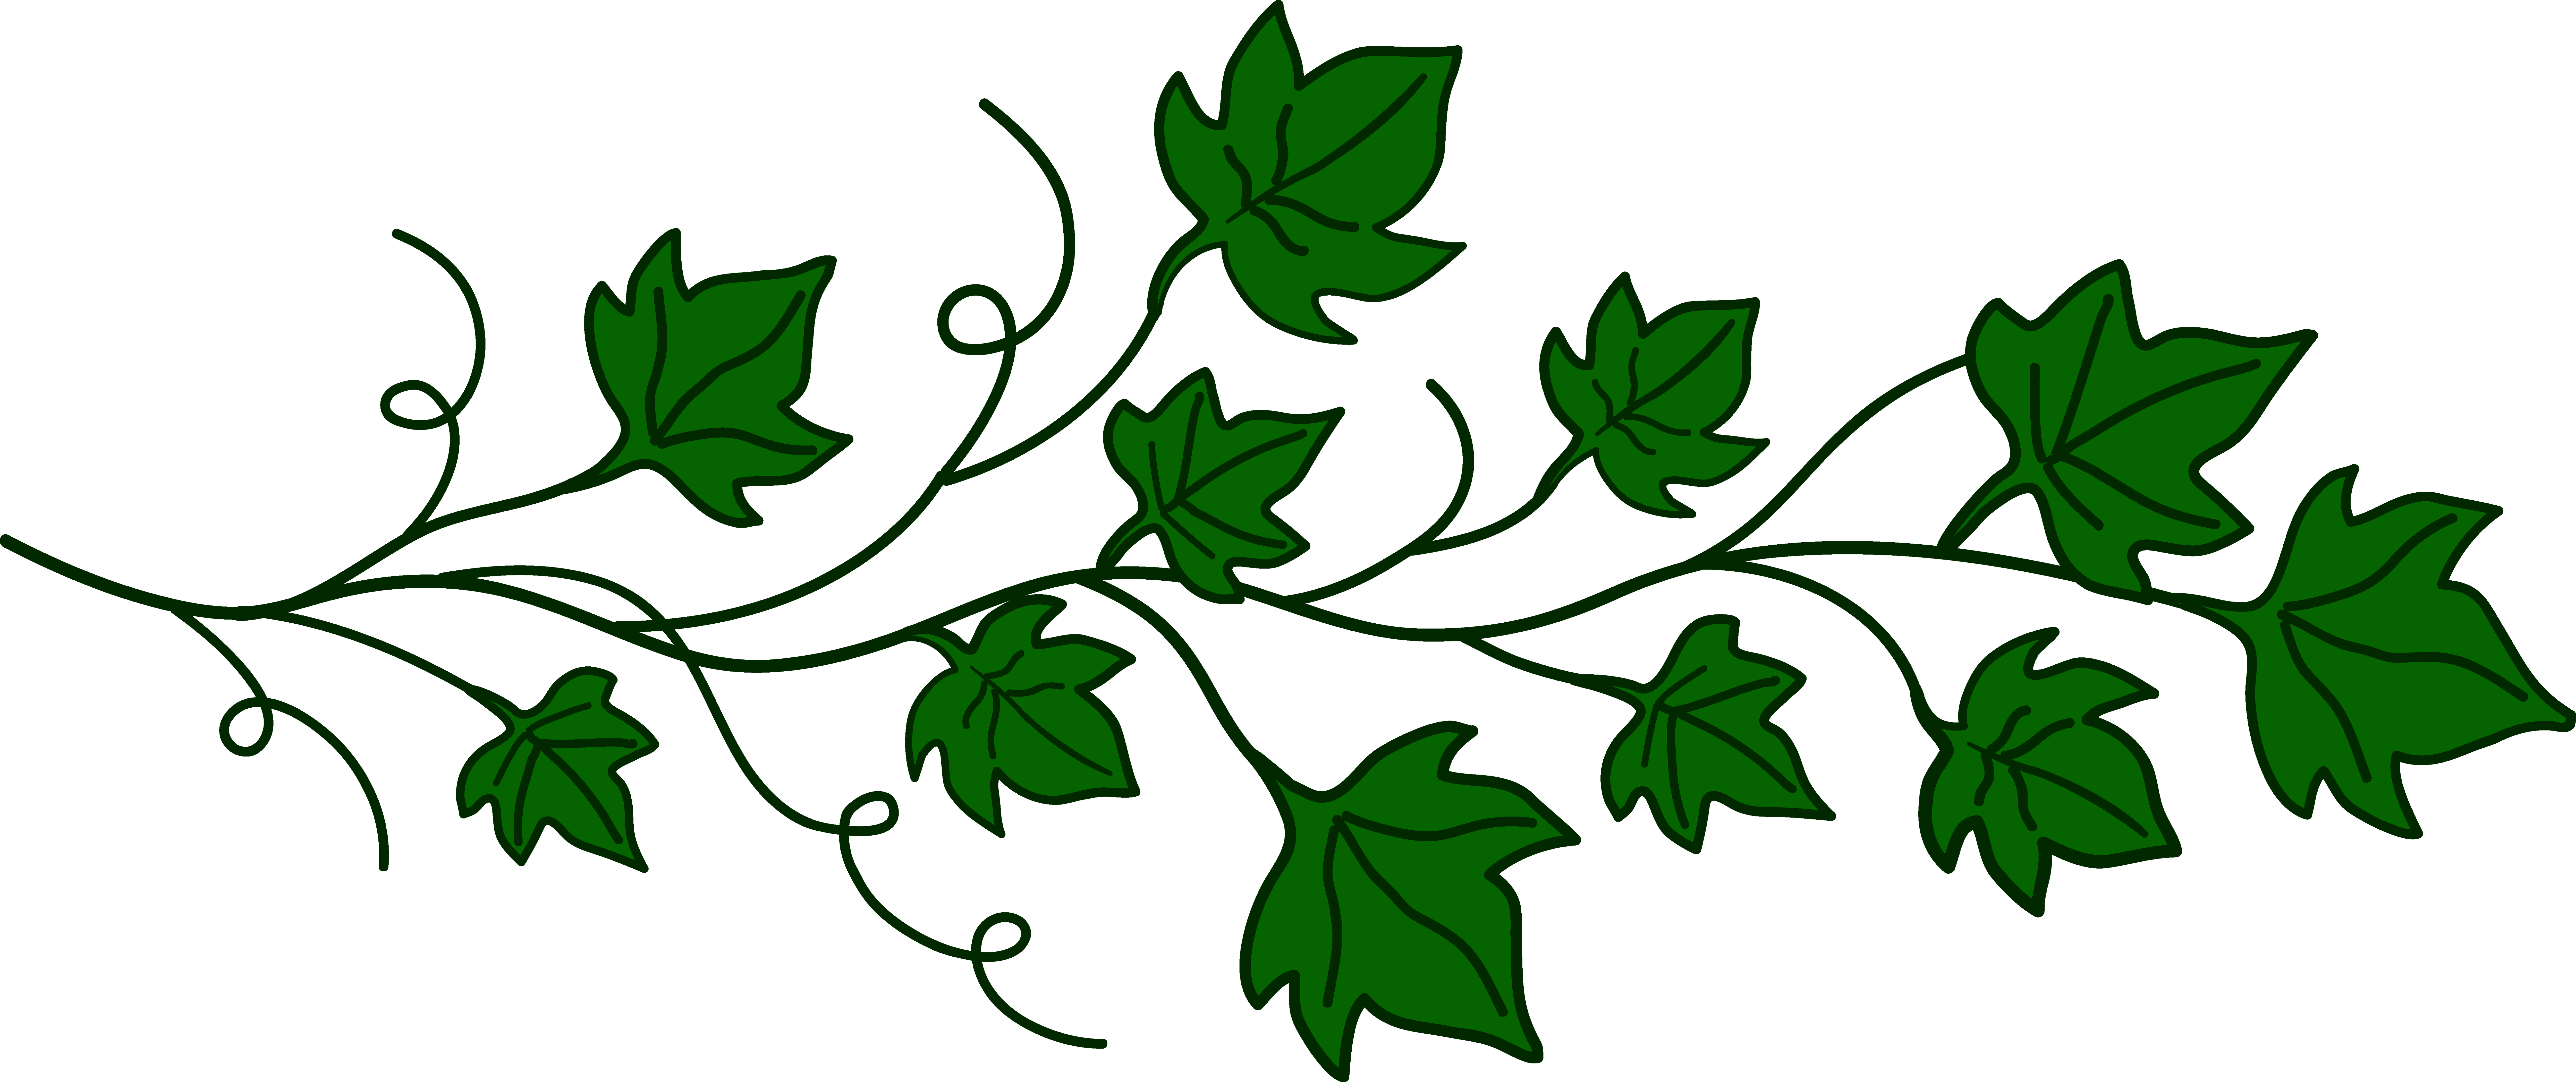 Ivy Leaf Vine Clip Art